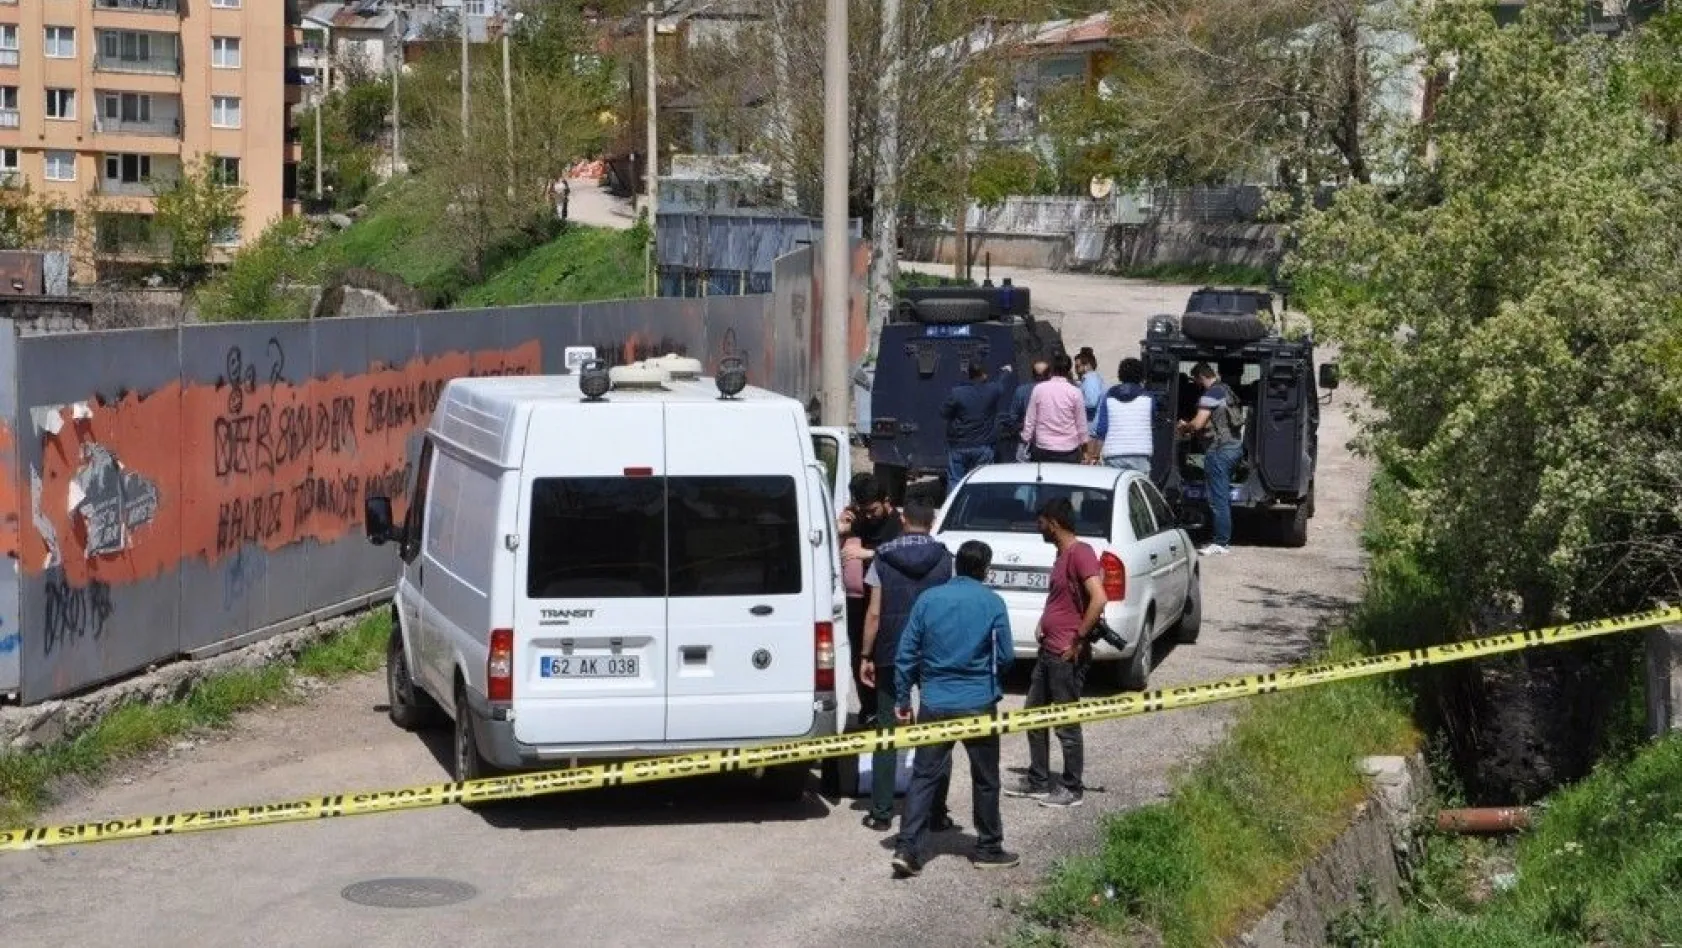 Tunceli'de klozet altına tuzaklanmış patlayıcı bulundu
